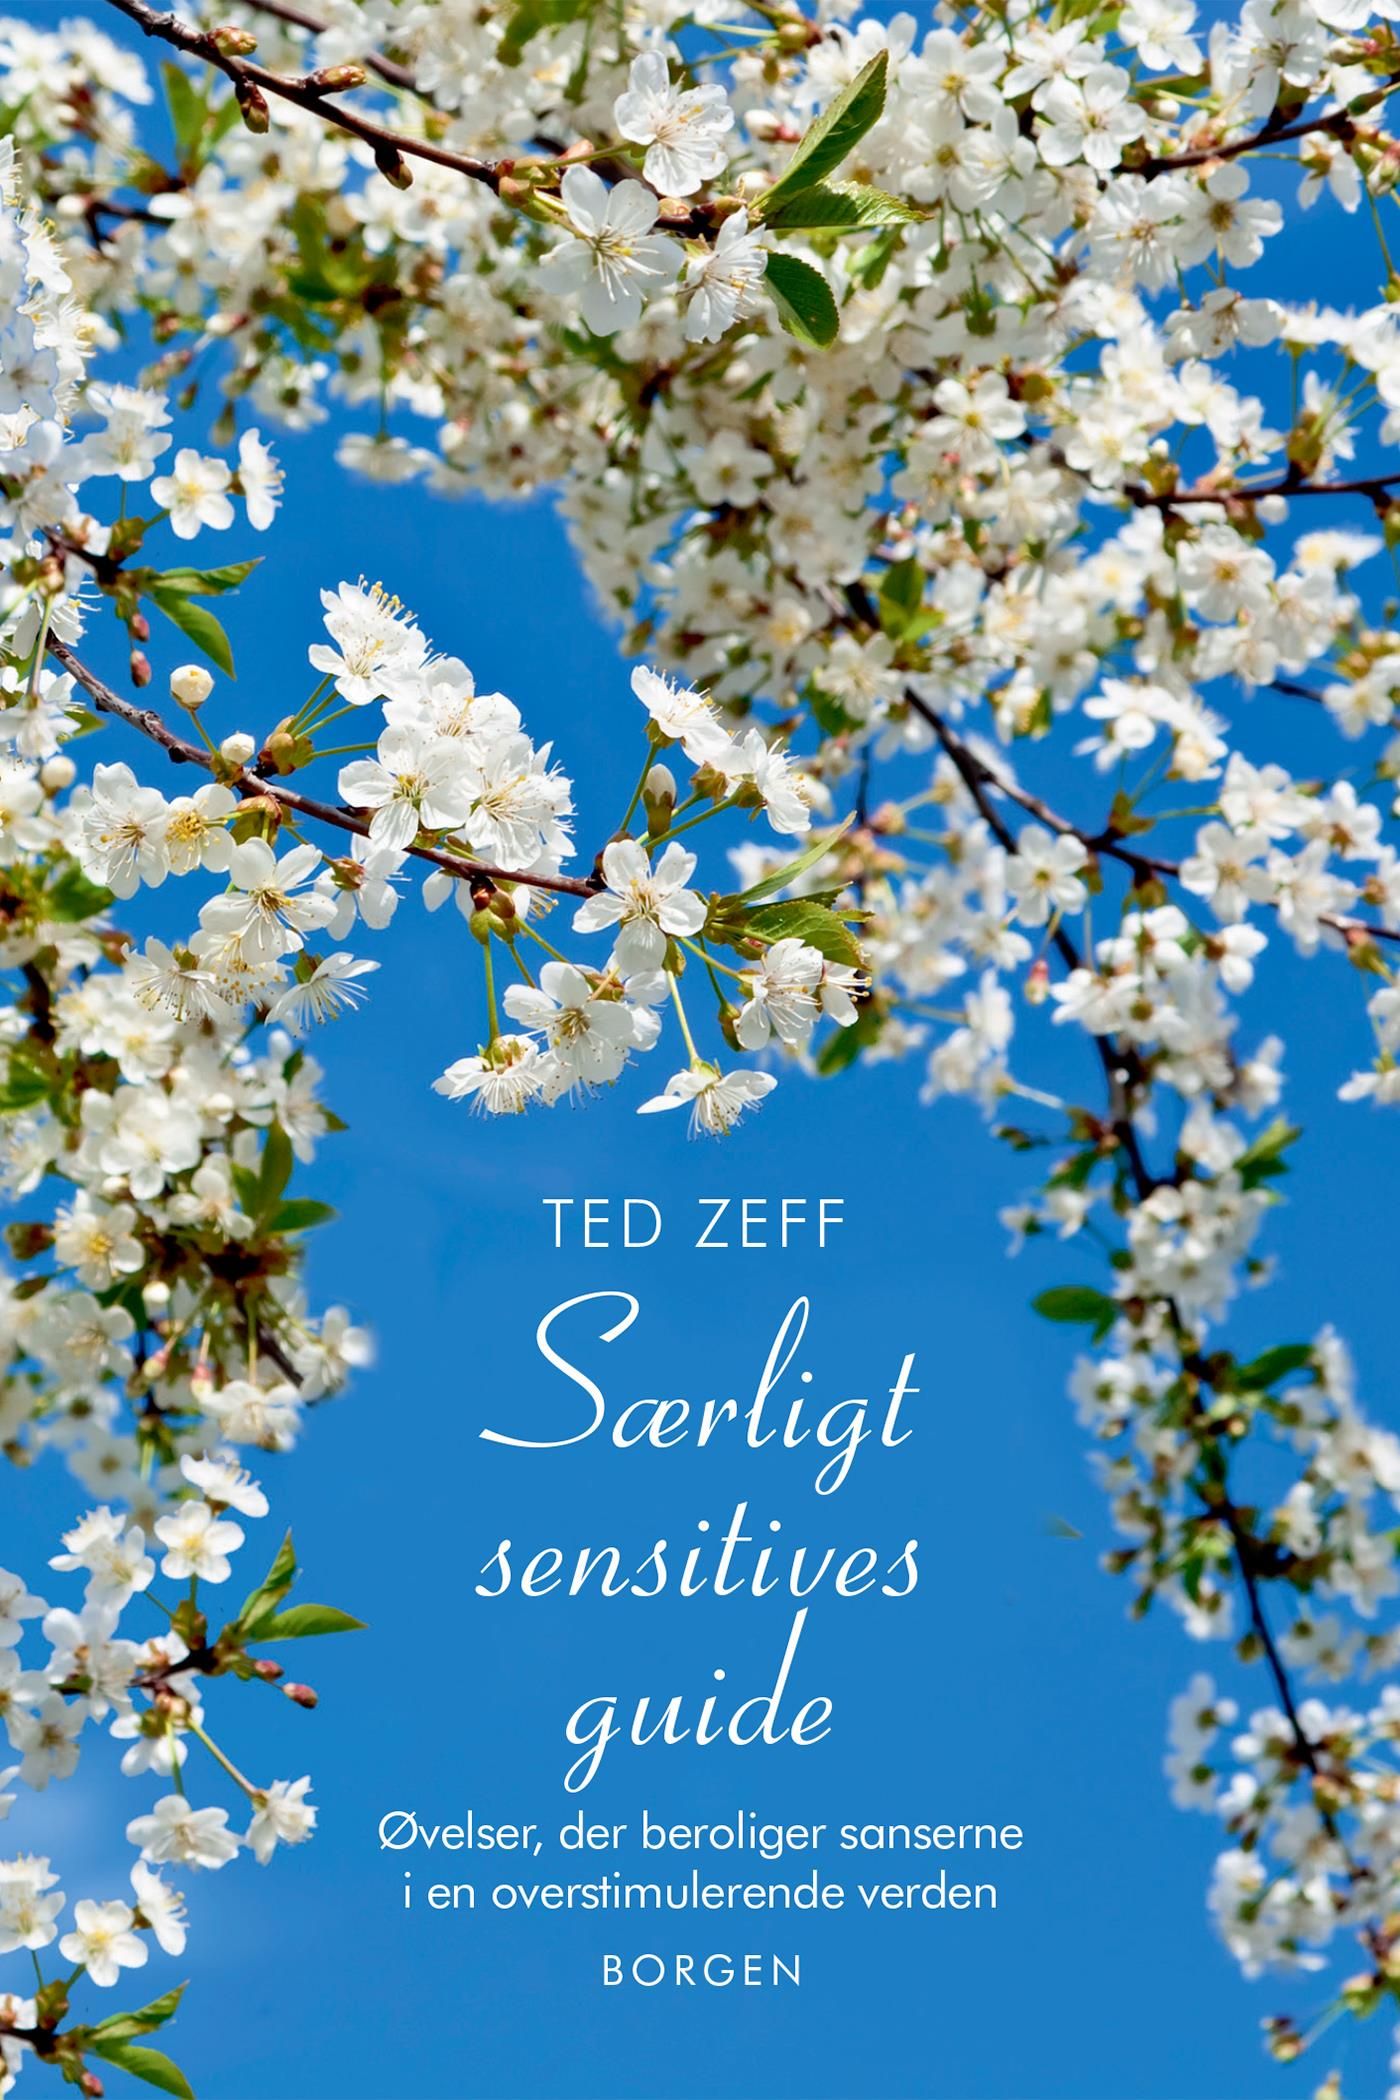 Særligt sensitives guide, eBook by Ted Zeff